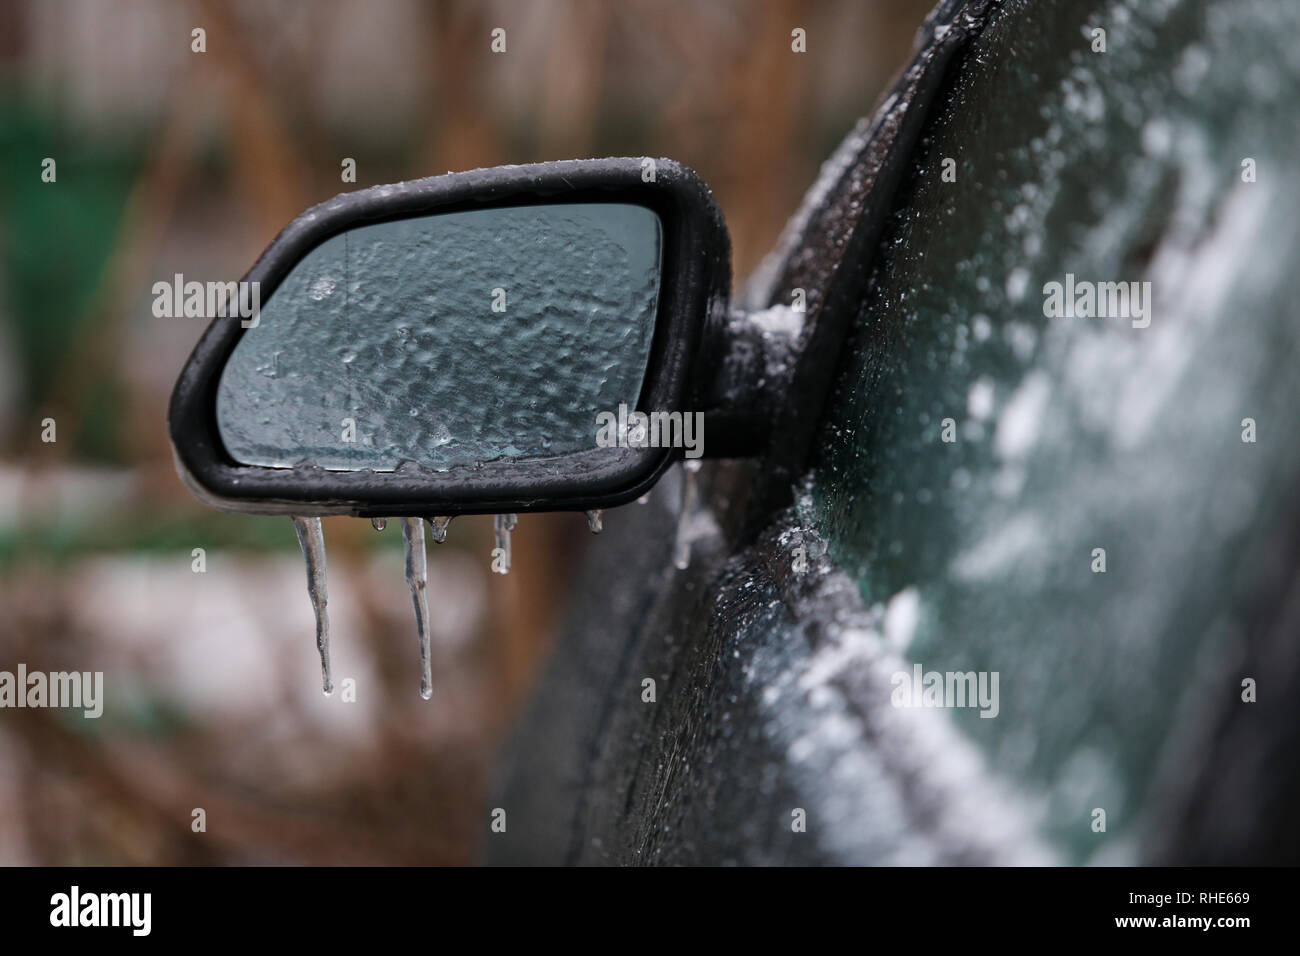 Auto gefrorene Seite Spiegel nach einem eisregen Phänomen Stockfotografie -  Alamy